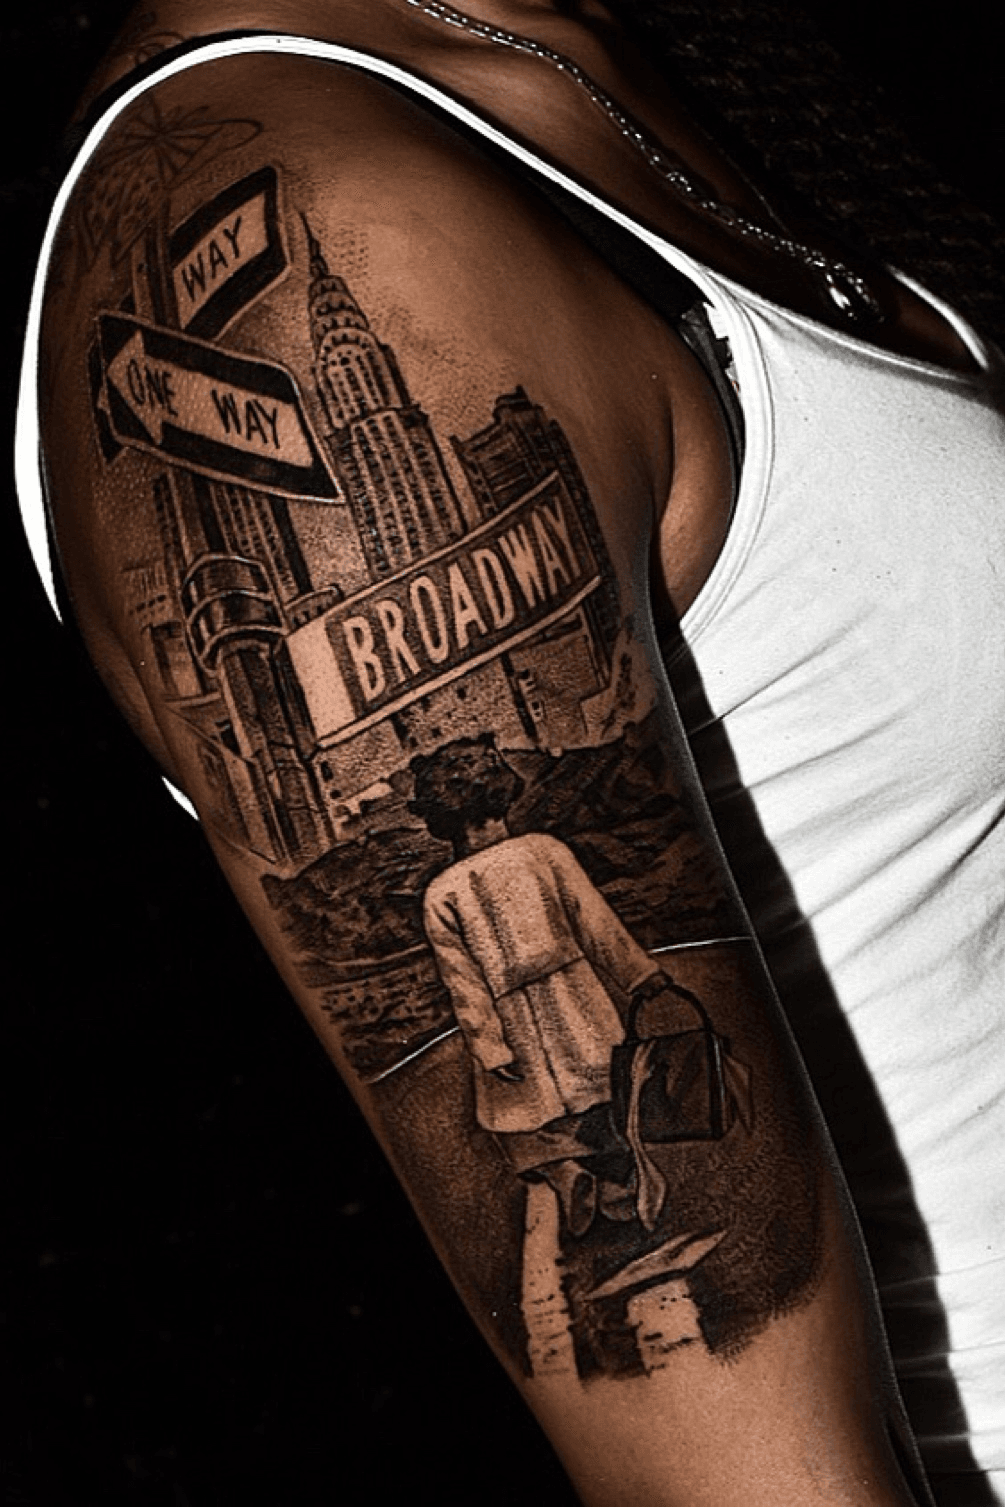 30 Street Sign Tattoo Ideas For Men  Navigational Designs  Small tattoos  Tattoo designs Tattoos